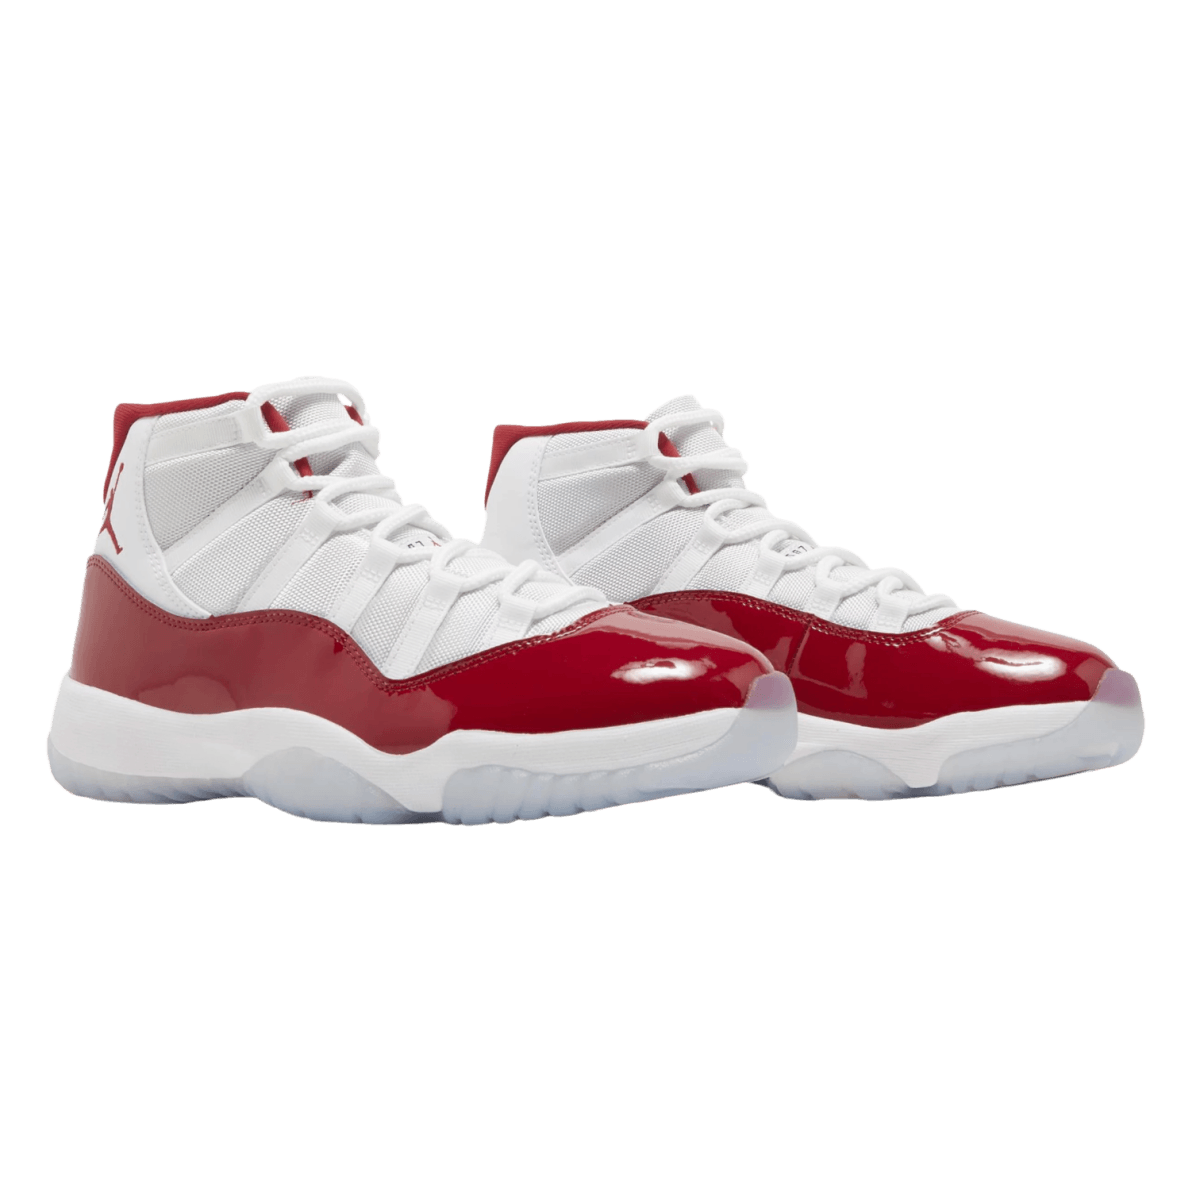 Air Jordan 11 Retro 'Cherry' - Grade School - High Sneaker - Jawns on Fire Sneakers & Streetwear